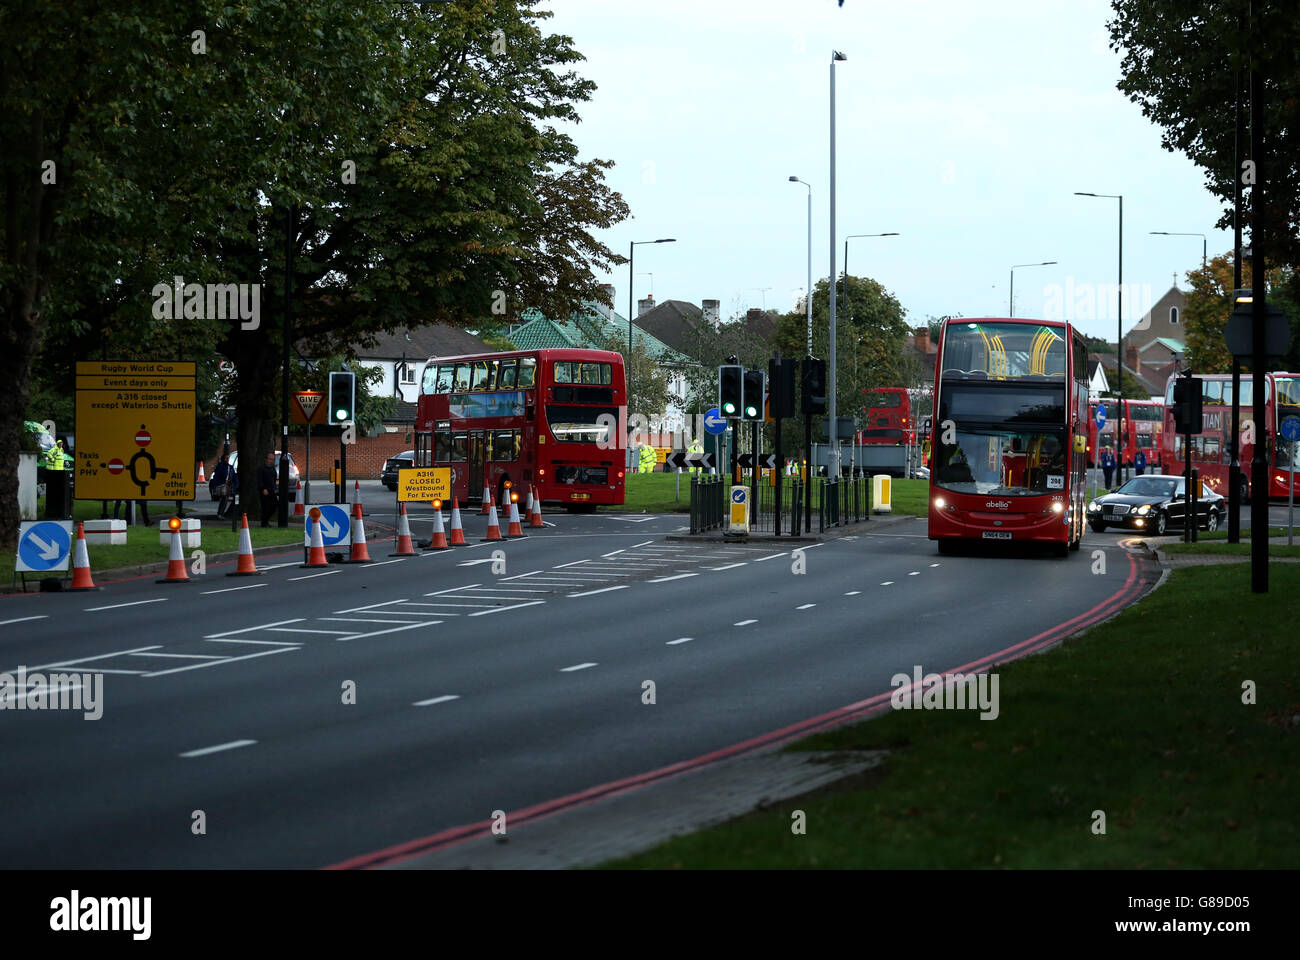 Visione generale delle restrizioni al traffico e delle deviazioni prima della partita della Coppa del mondo di Rugby al Twickenham Stadium, Londra. Foto Stock